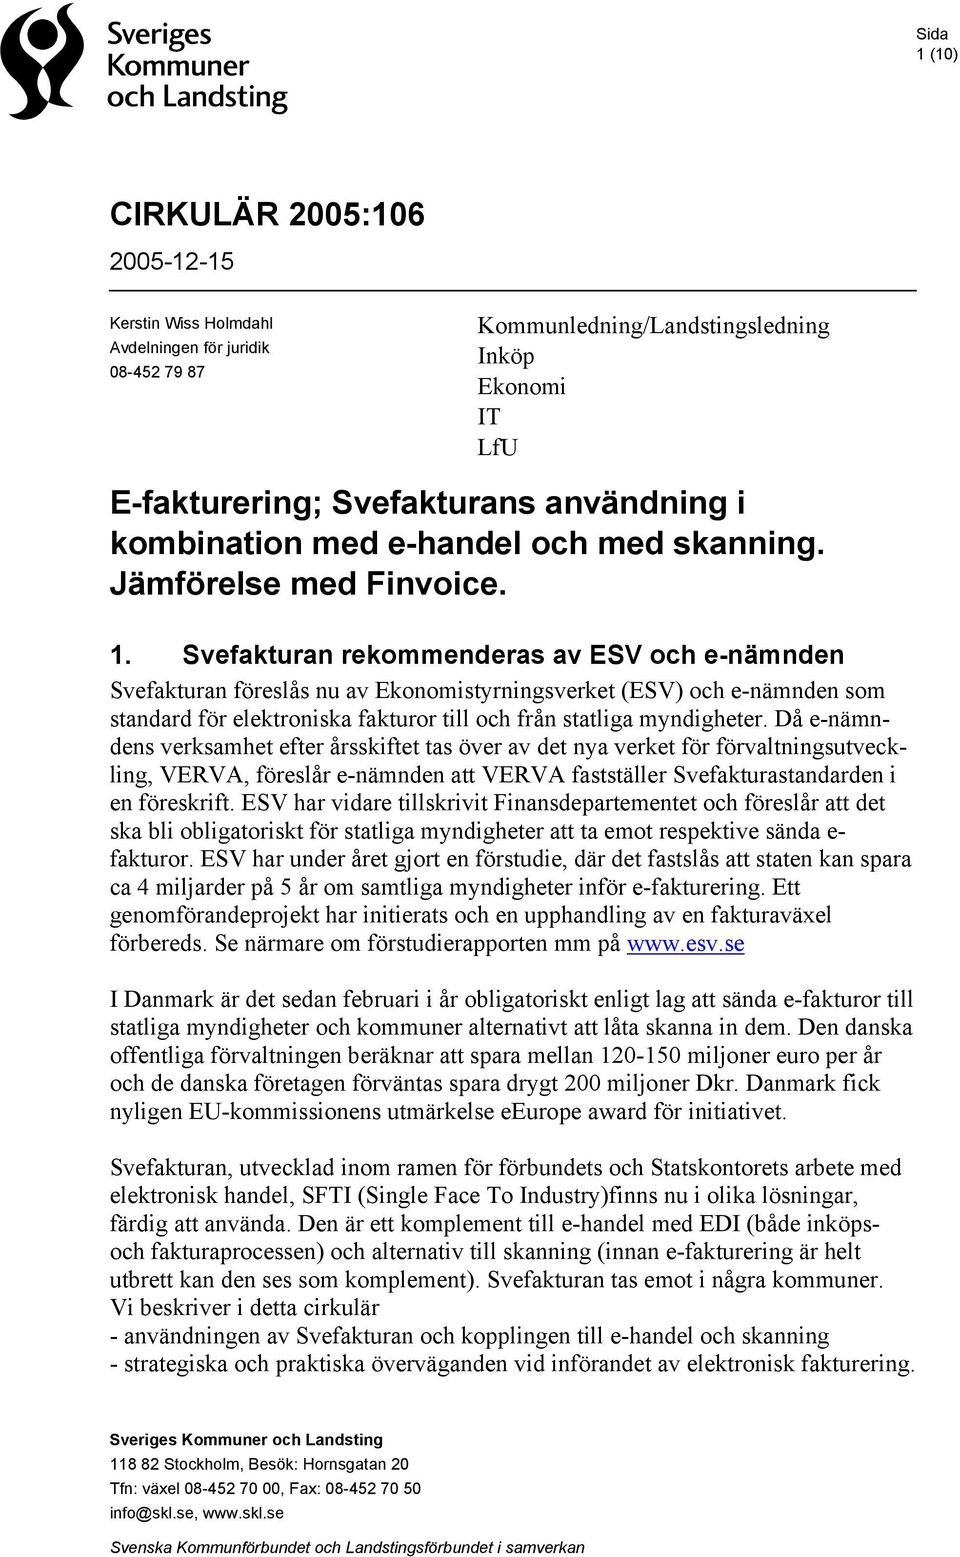 Svefakturan rekommenderas av ESV och e-nämnden Svefakturan föreslås nu av Ekonomistyrningsverket (ESV) och e-nämnden som standard för elektroniska fakturor till och från statliga myndigheter.